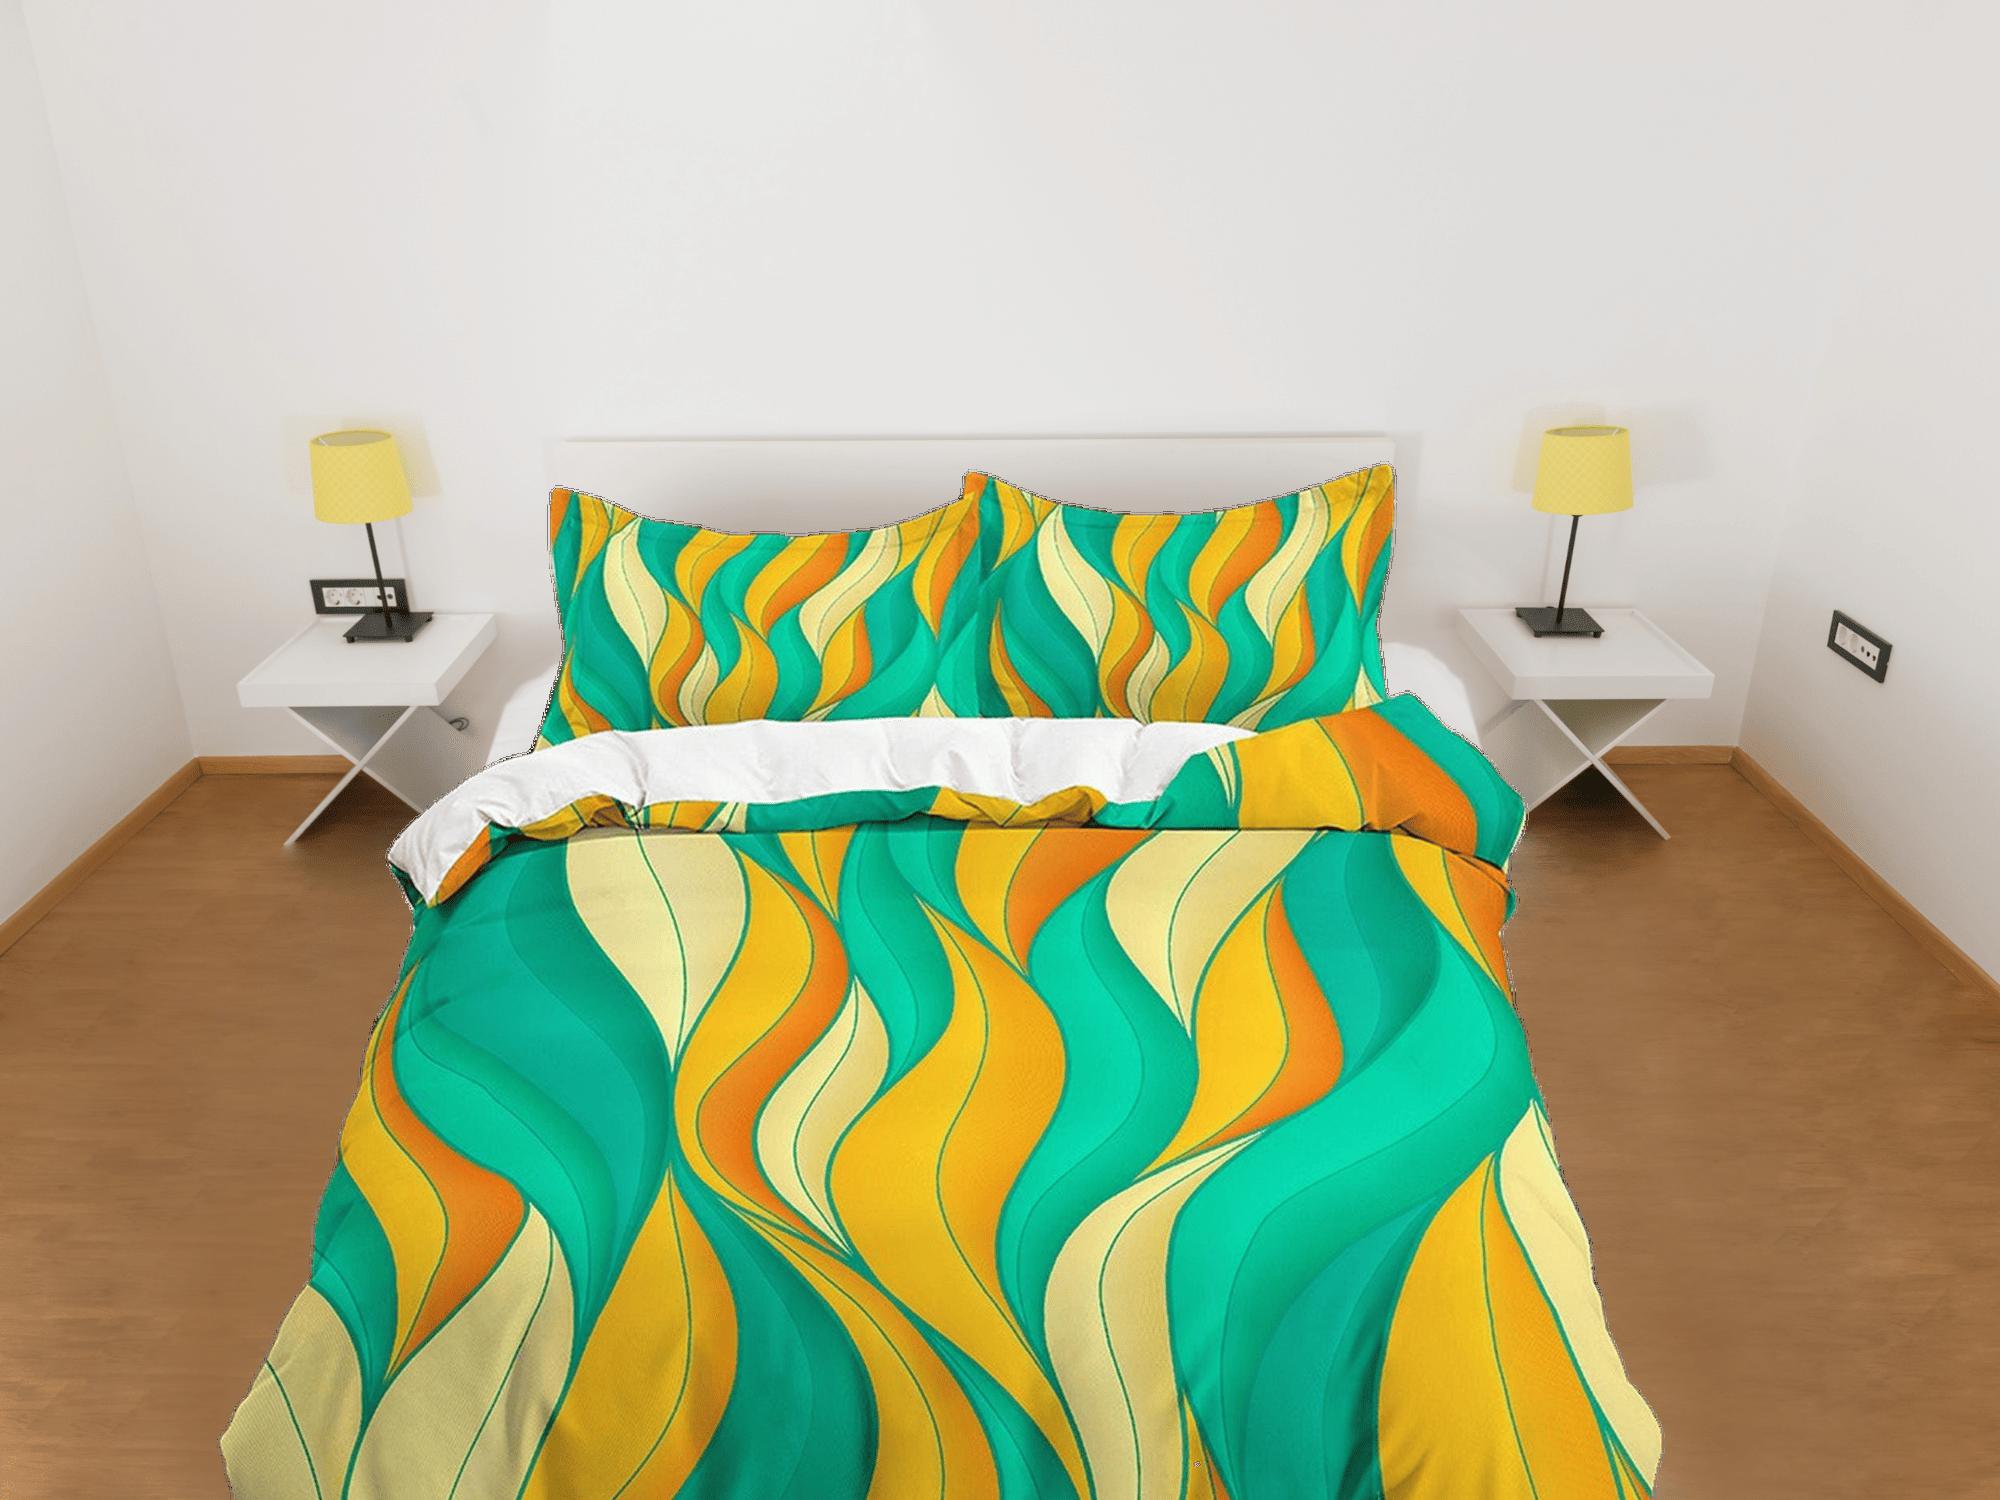 daintyduvet Mid century modern bedroom art set yellow orange green duvet cover, aesthetic room decor boho chic bedding set full king queen, retro duvet